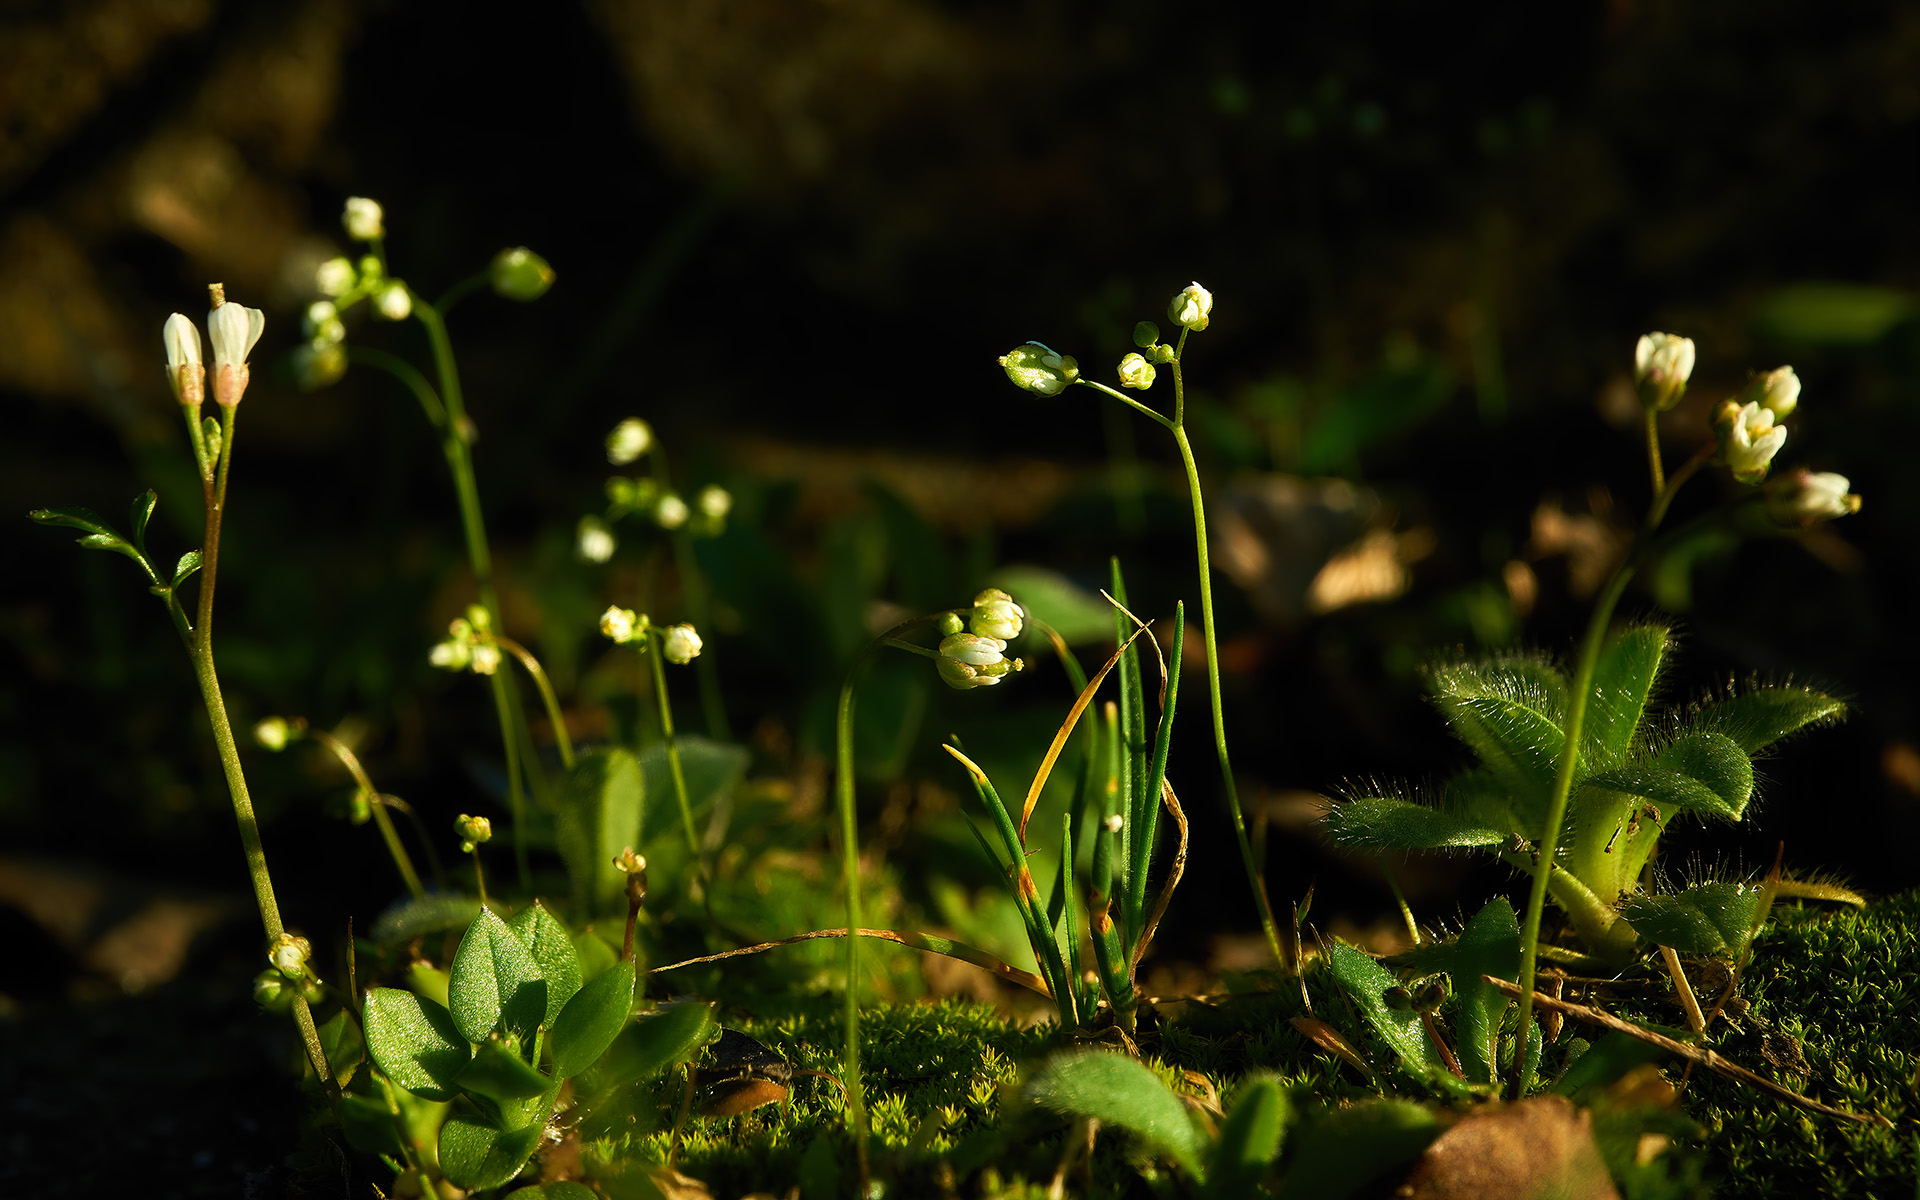 Portion of moss: a miniature garden...